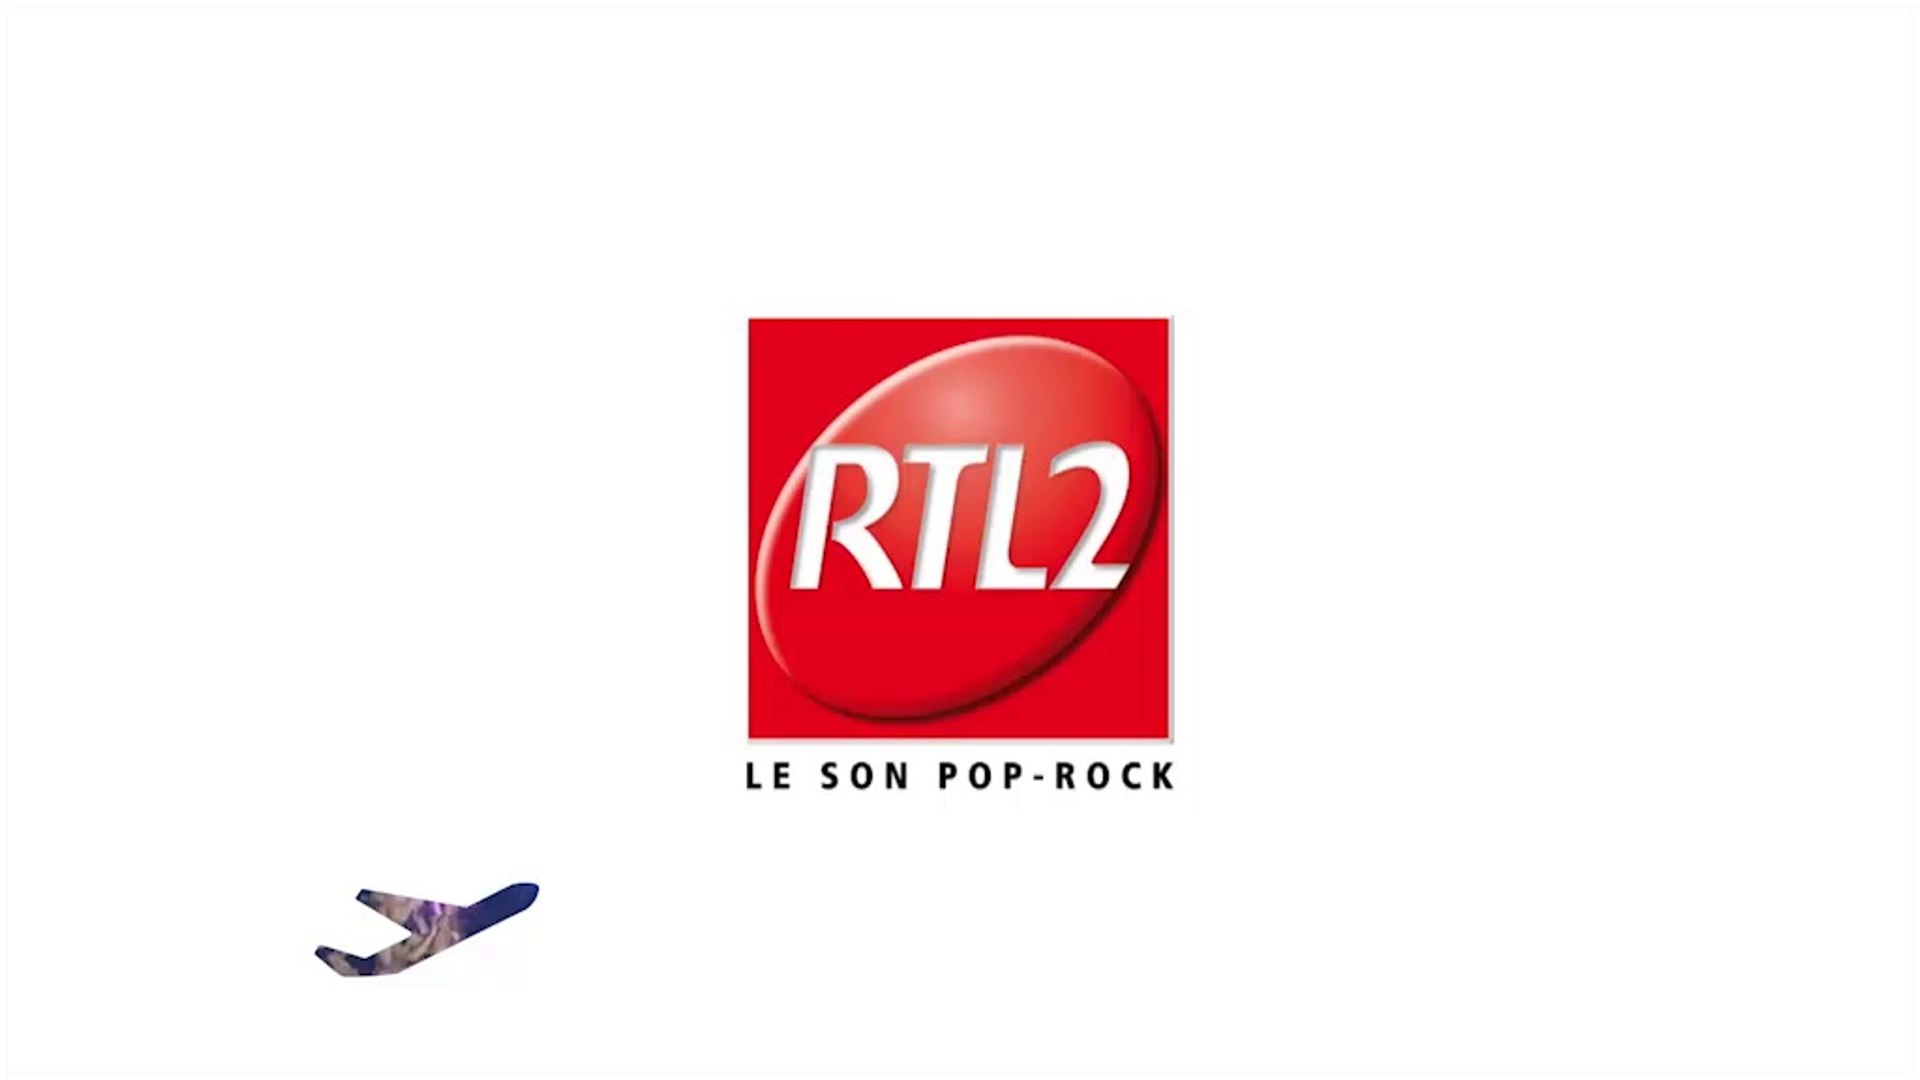 RTL2, la seule radio à vous offrir des concerts Pop-Rock autour du monde -  Vidéo Dailymotion